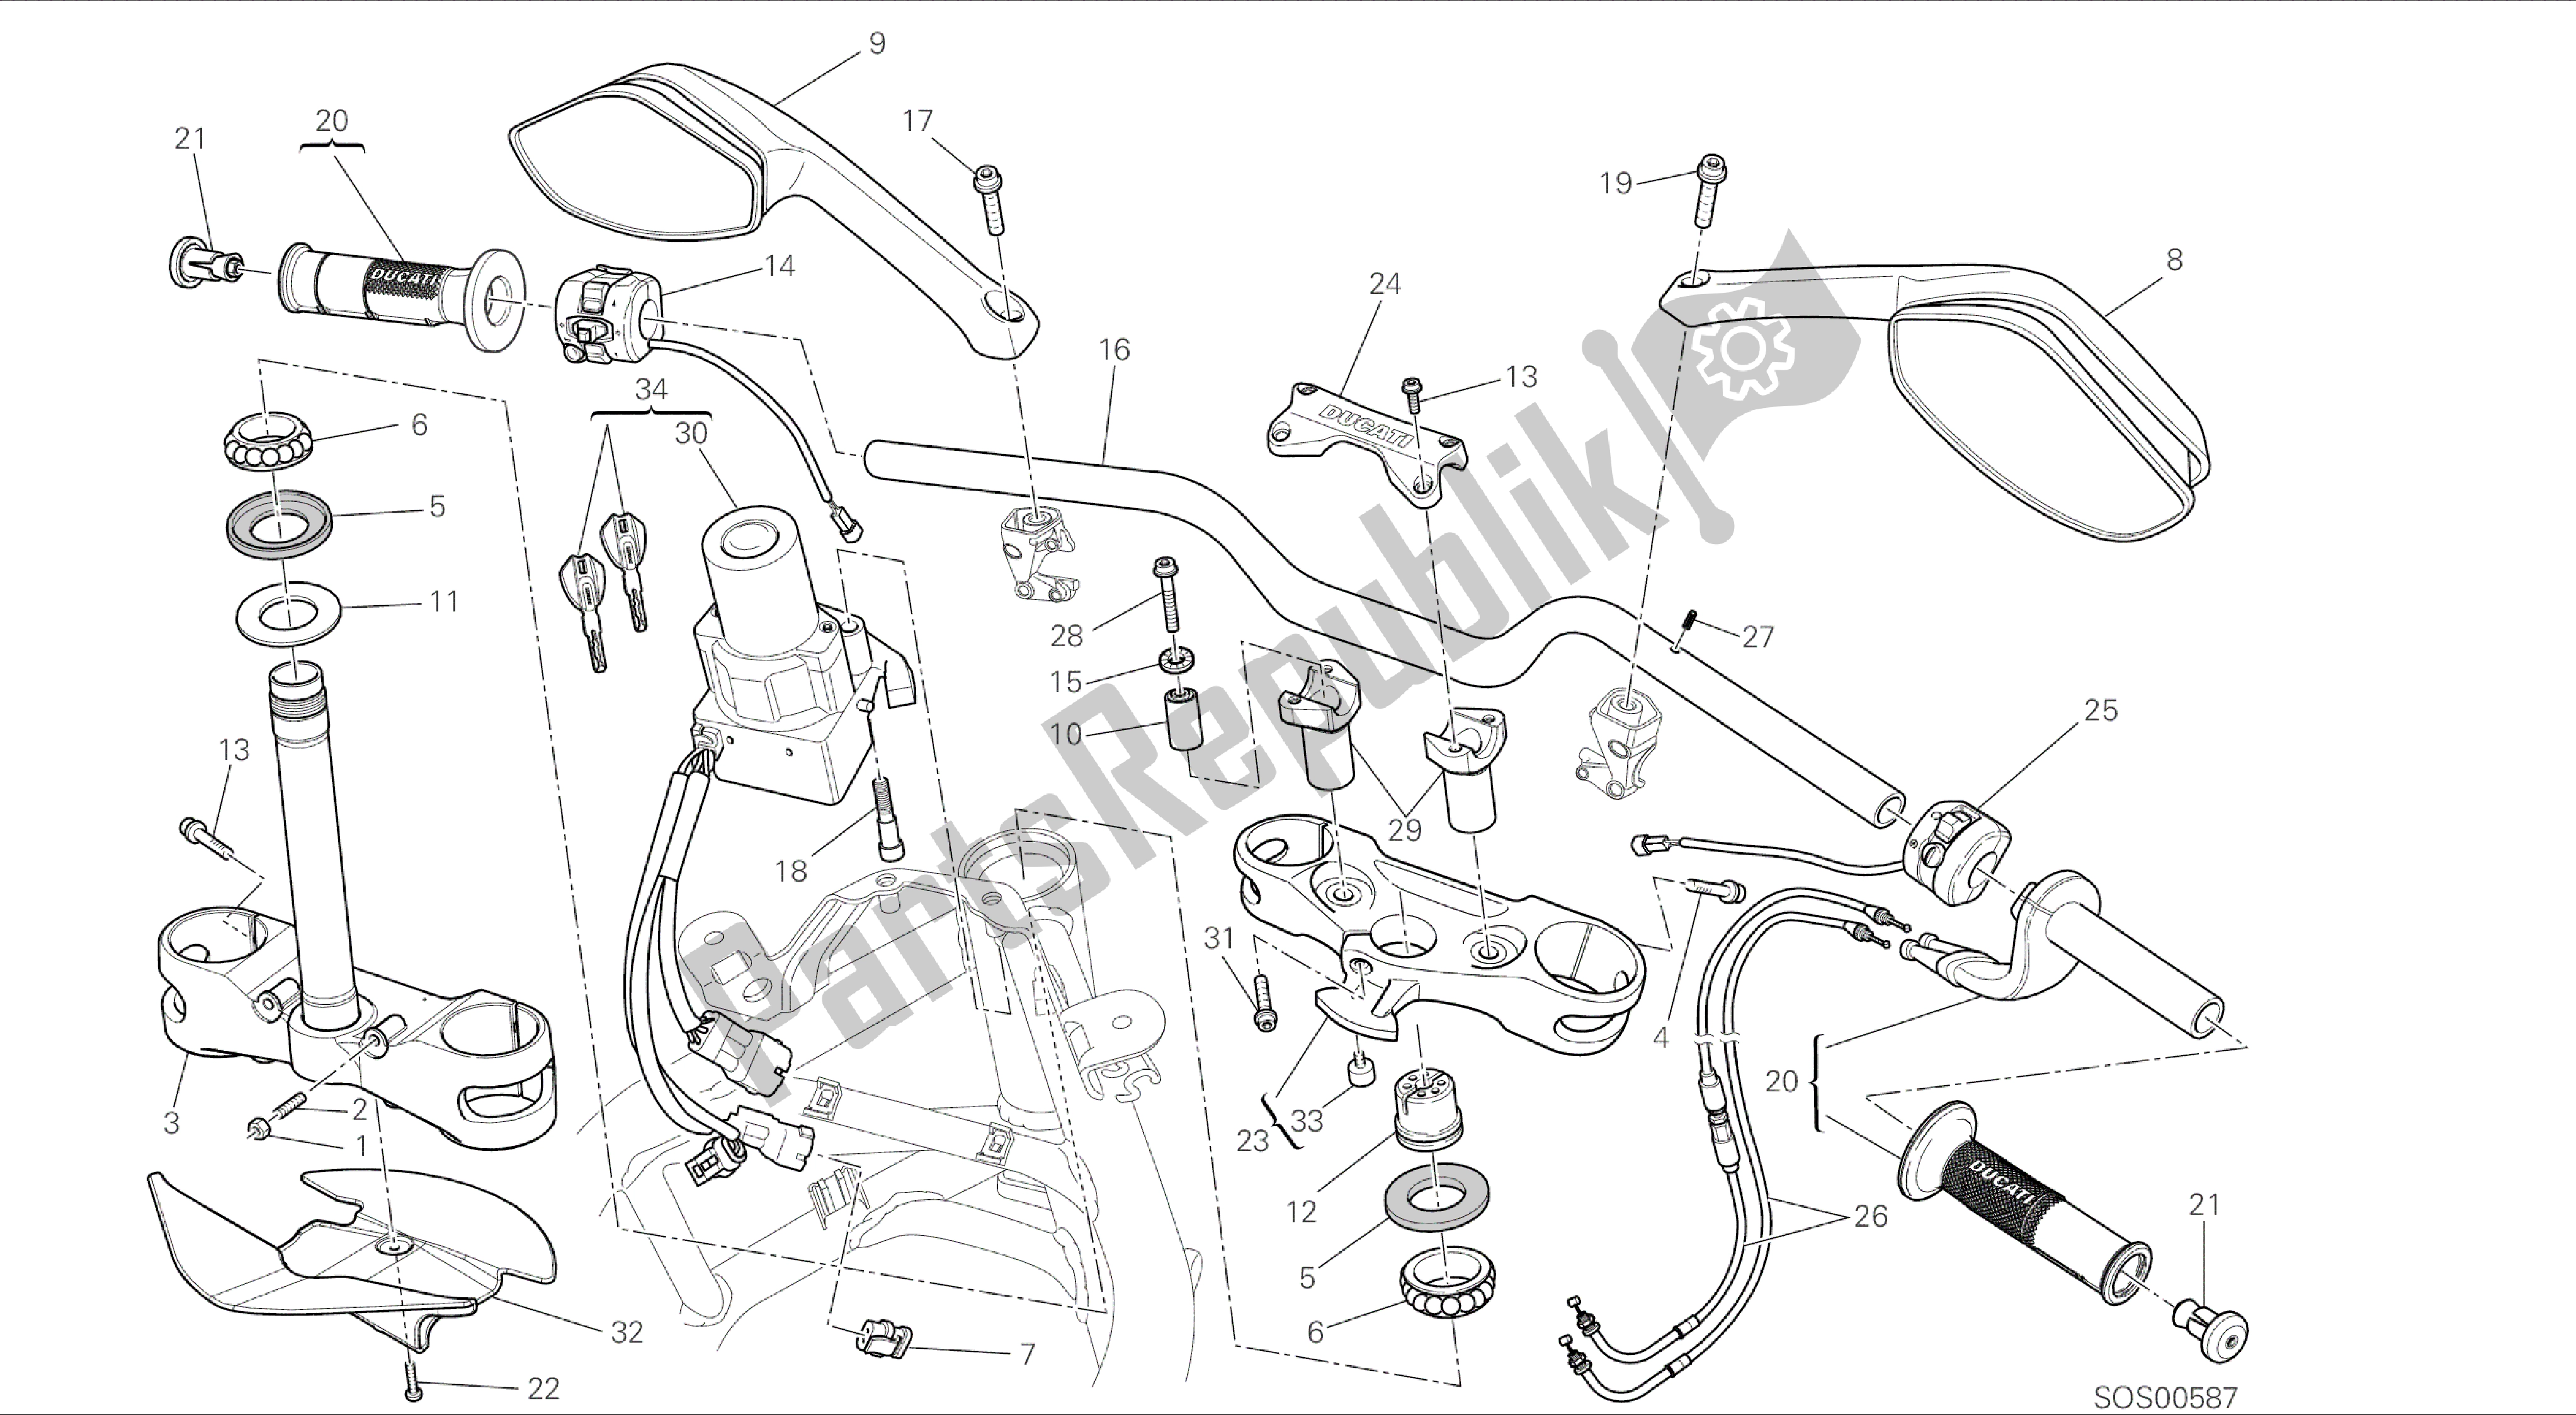 Todas las partes para Dibujo 021 - Manillar [mod: Ms1200-a; Xst: Marco De Grupo Aus, Eur, Fra, Tha] de Ducati Multistrada 1200 2014